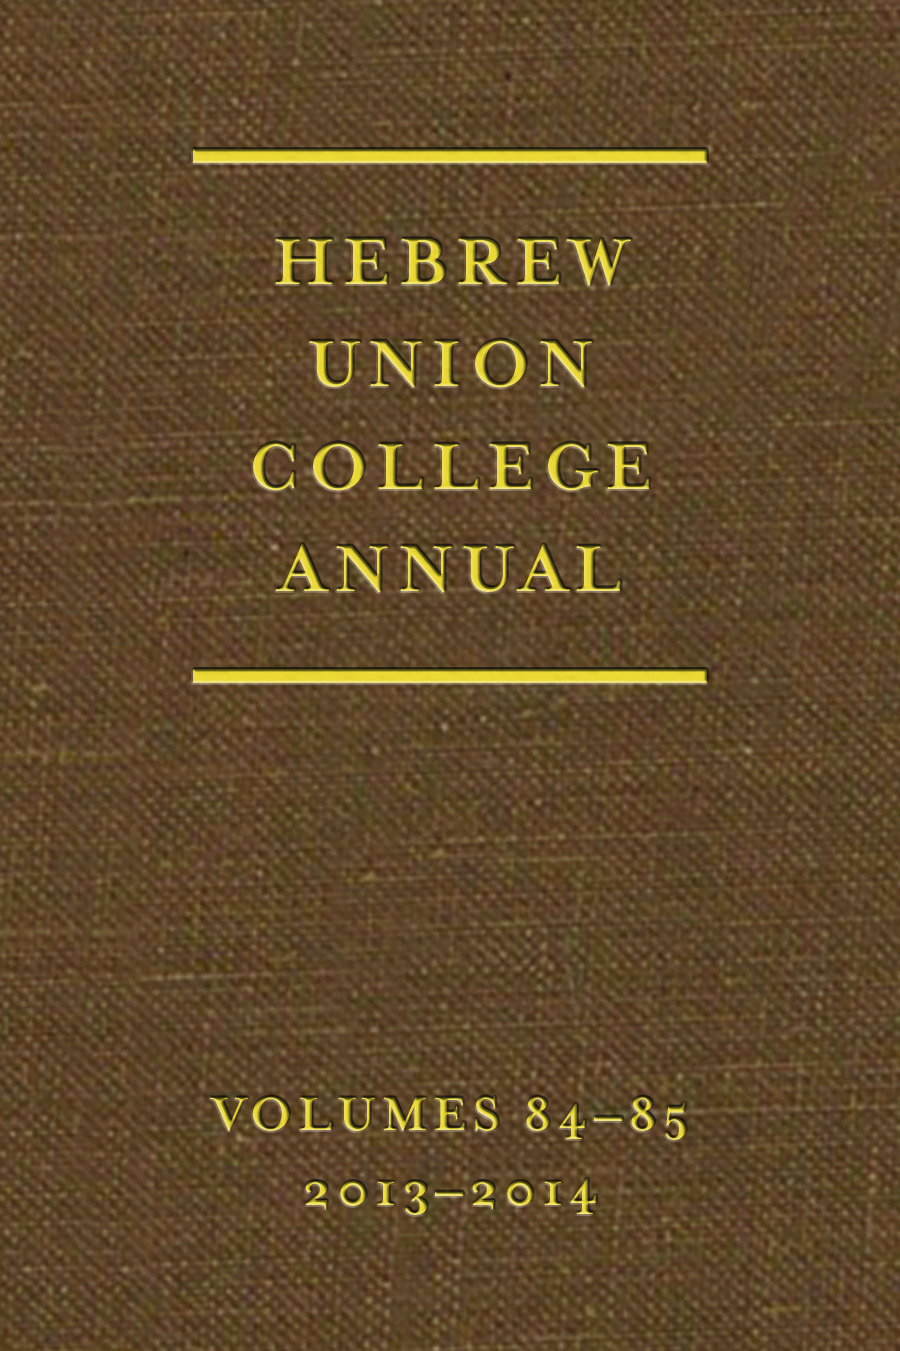 Hebrew Union College Annual 84-85 (2013-2014) - Hebrew Union College Press